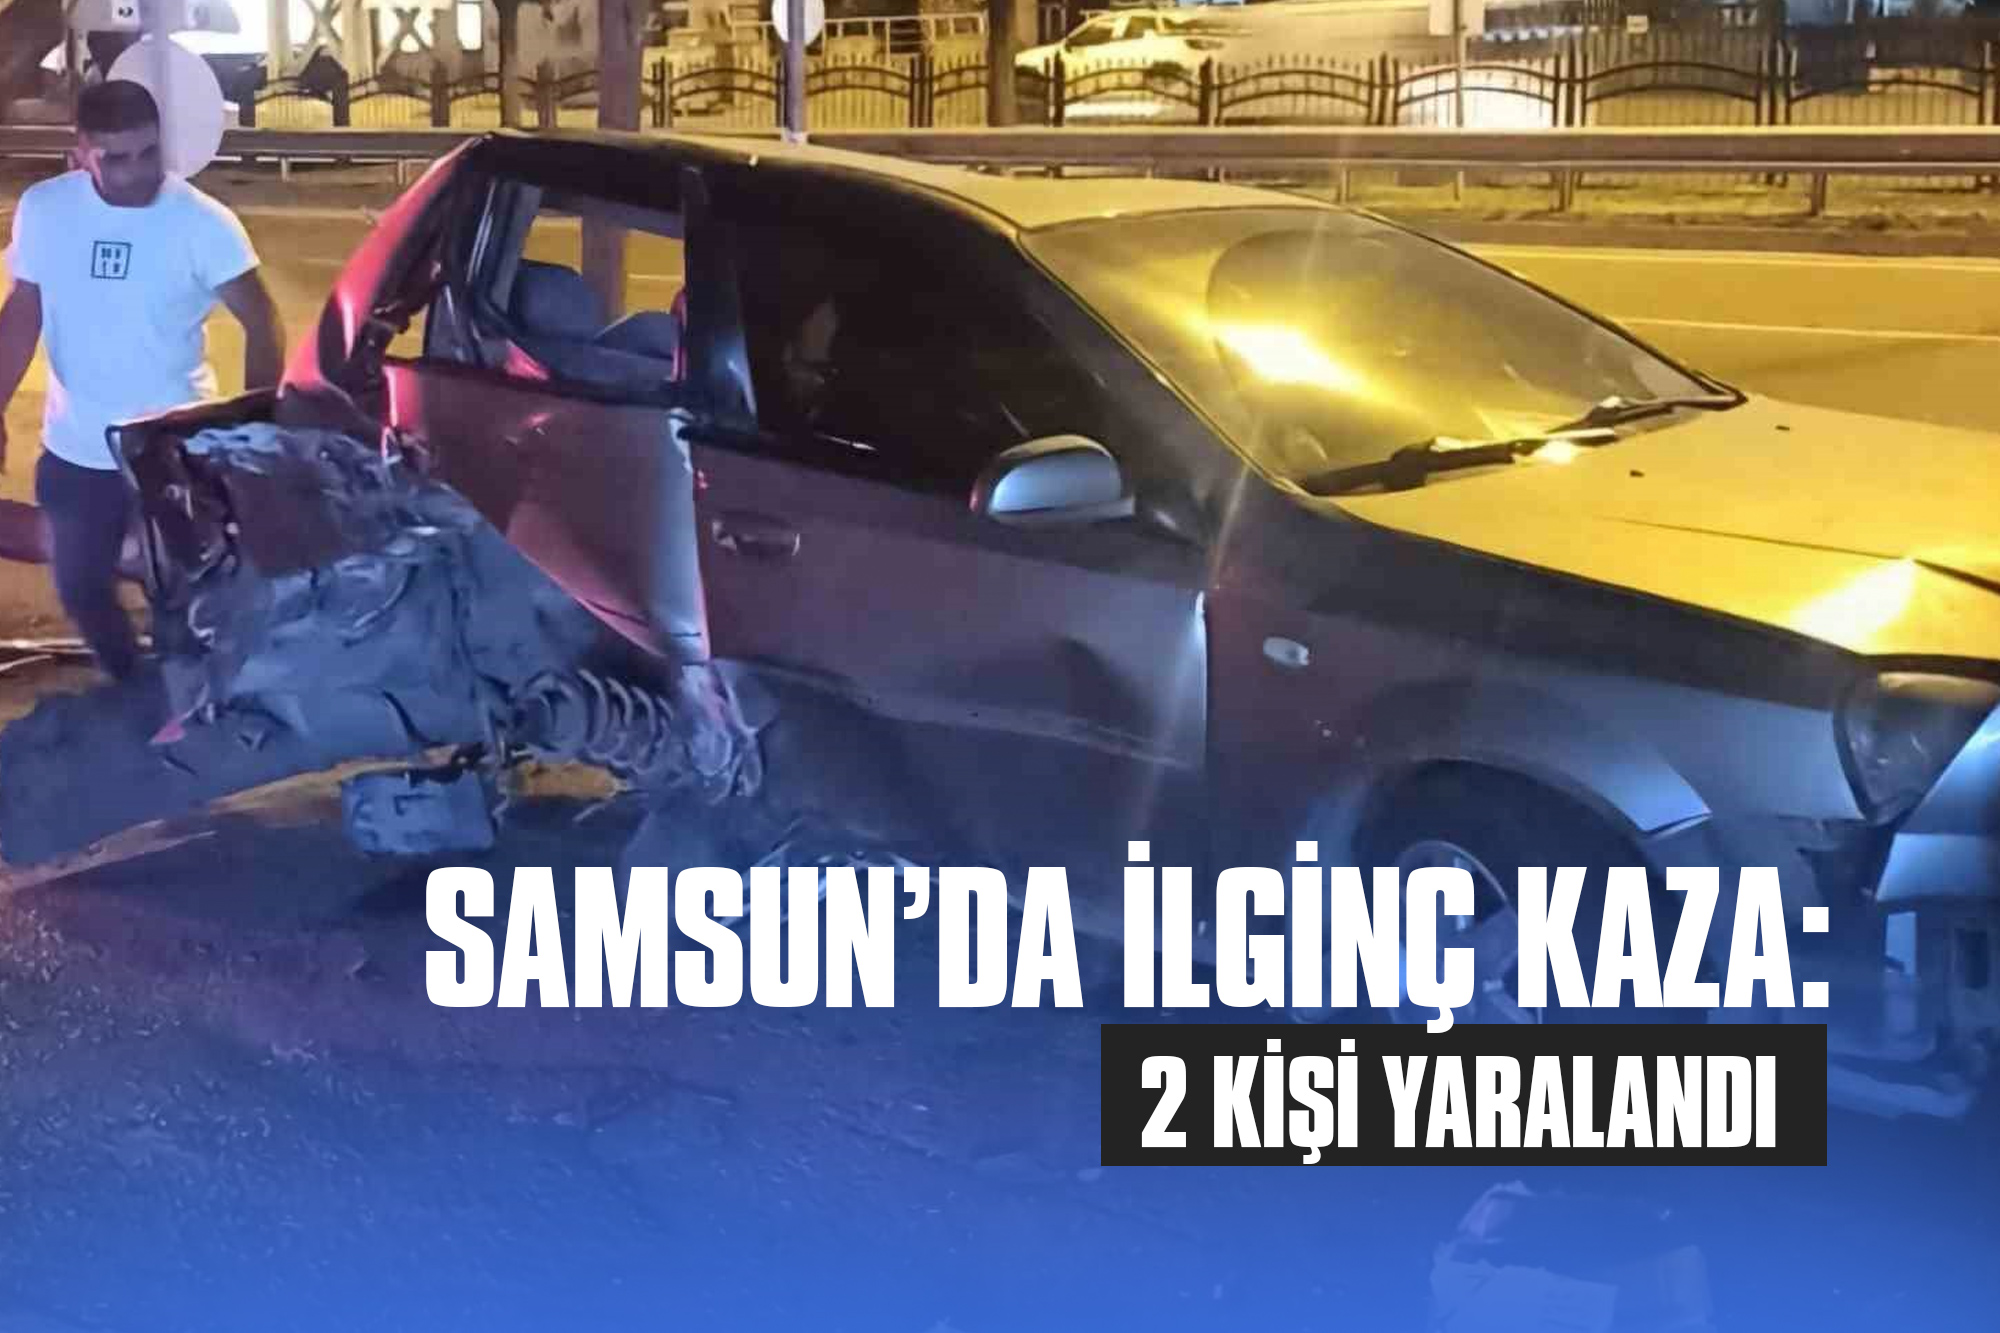 Samsun’da İlginç Kaza: 2 Kişi Yaralandı